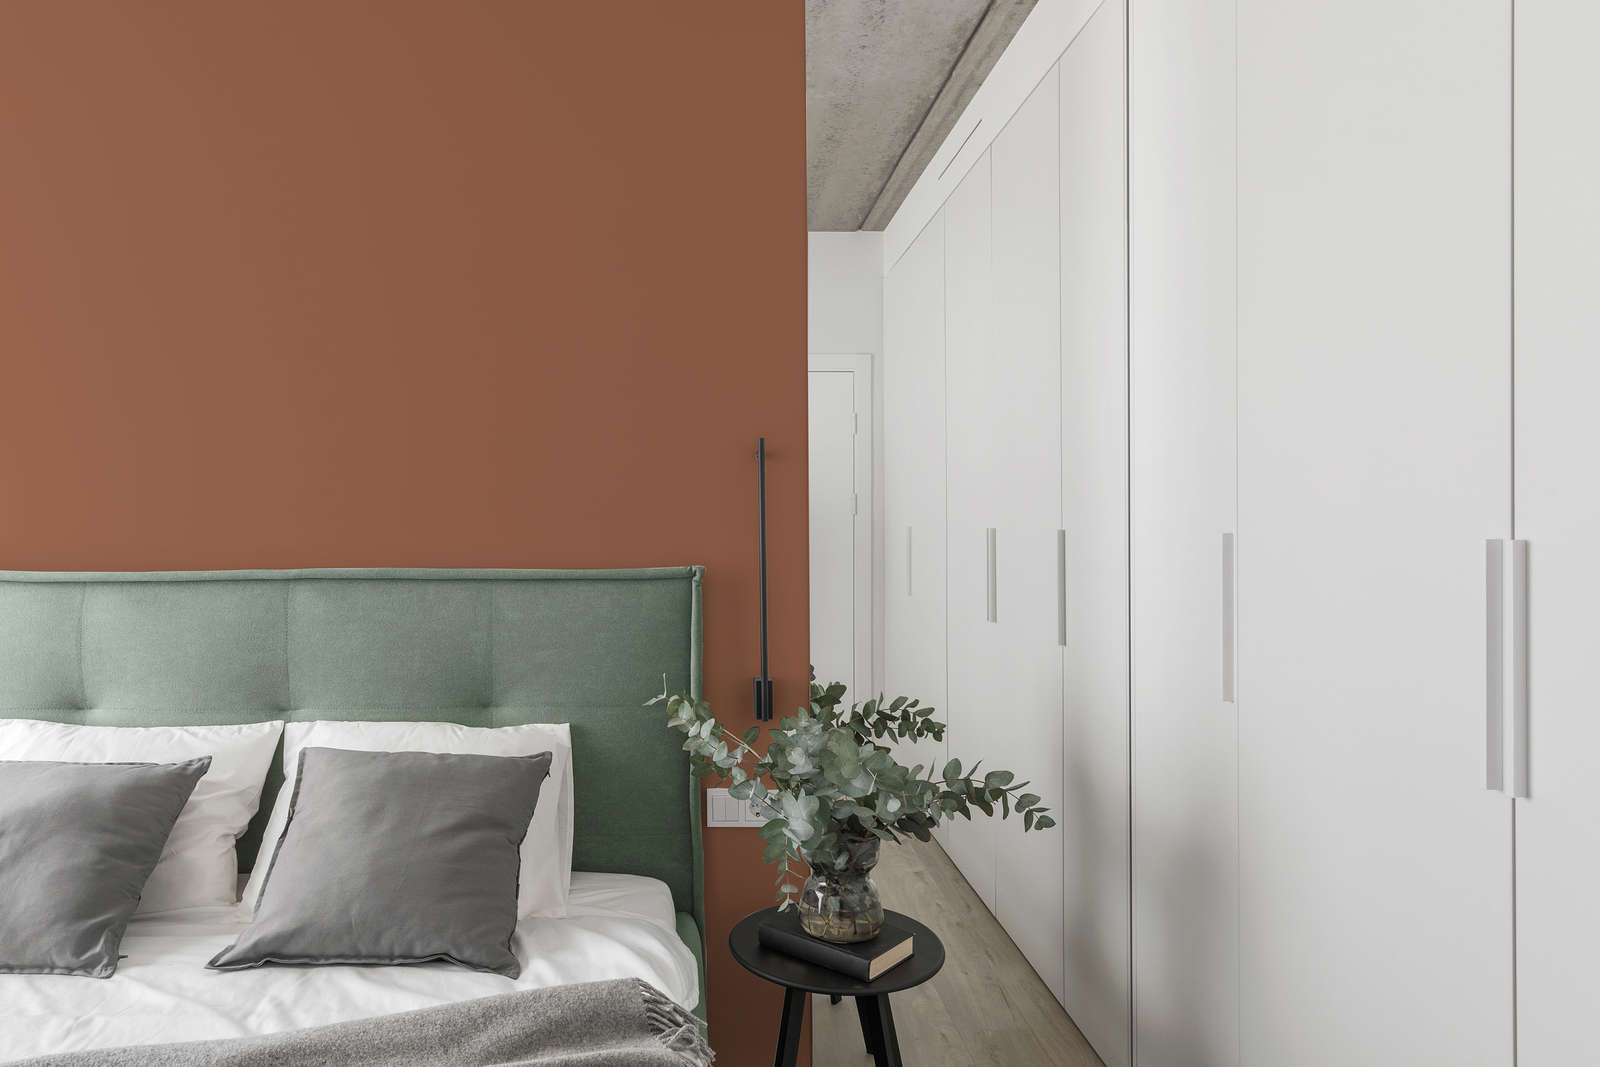             Premium Wandfarbe besänftigendes Terracotta »Pretty Peach« NW909 – 2,5 Liter
        